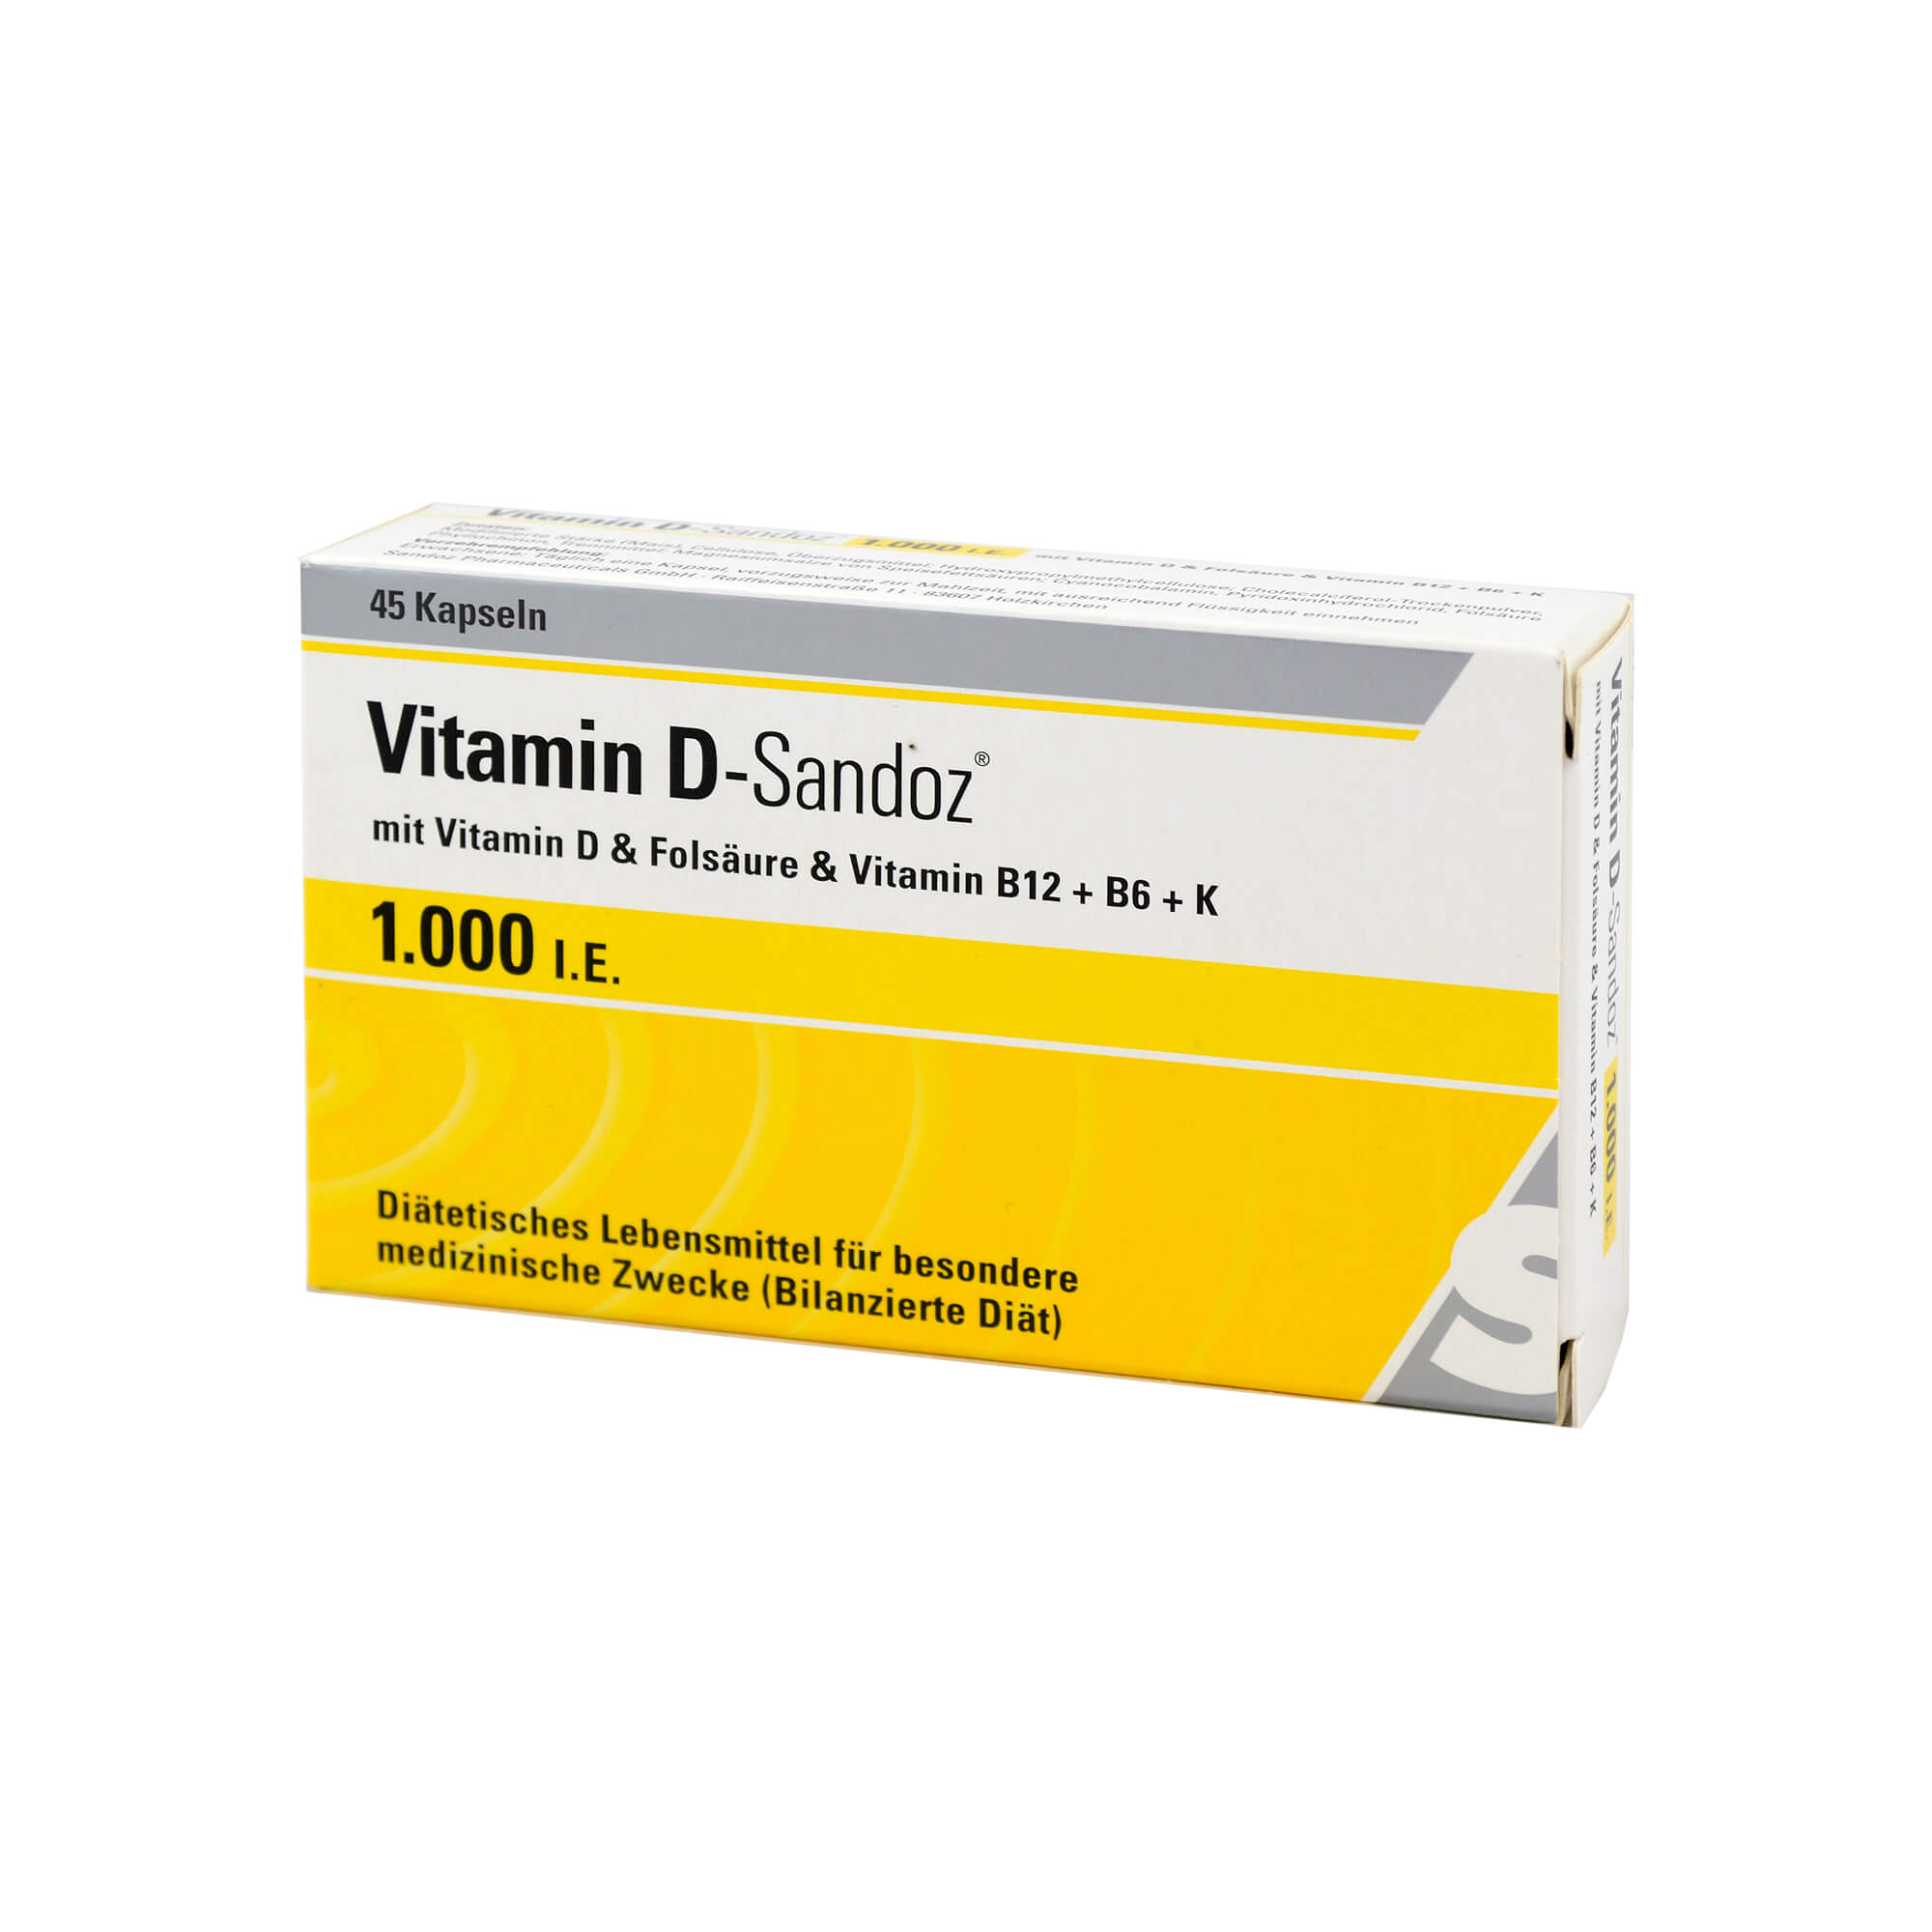 Zur diätetischen Behandlung von Vitamin-D-Mangel bei Osteoporose.